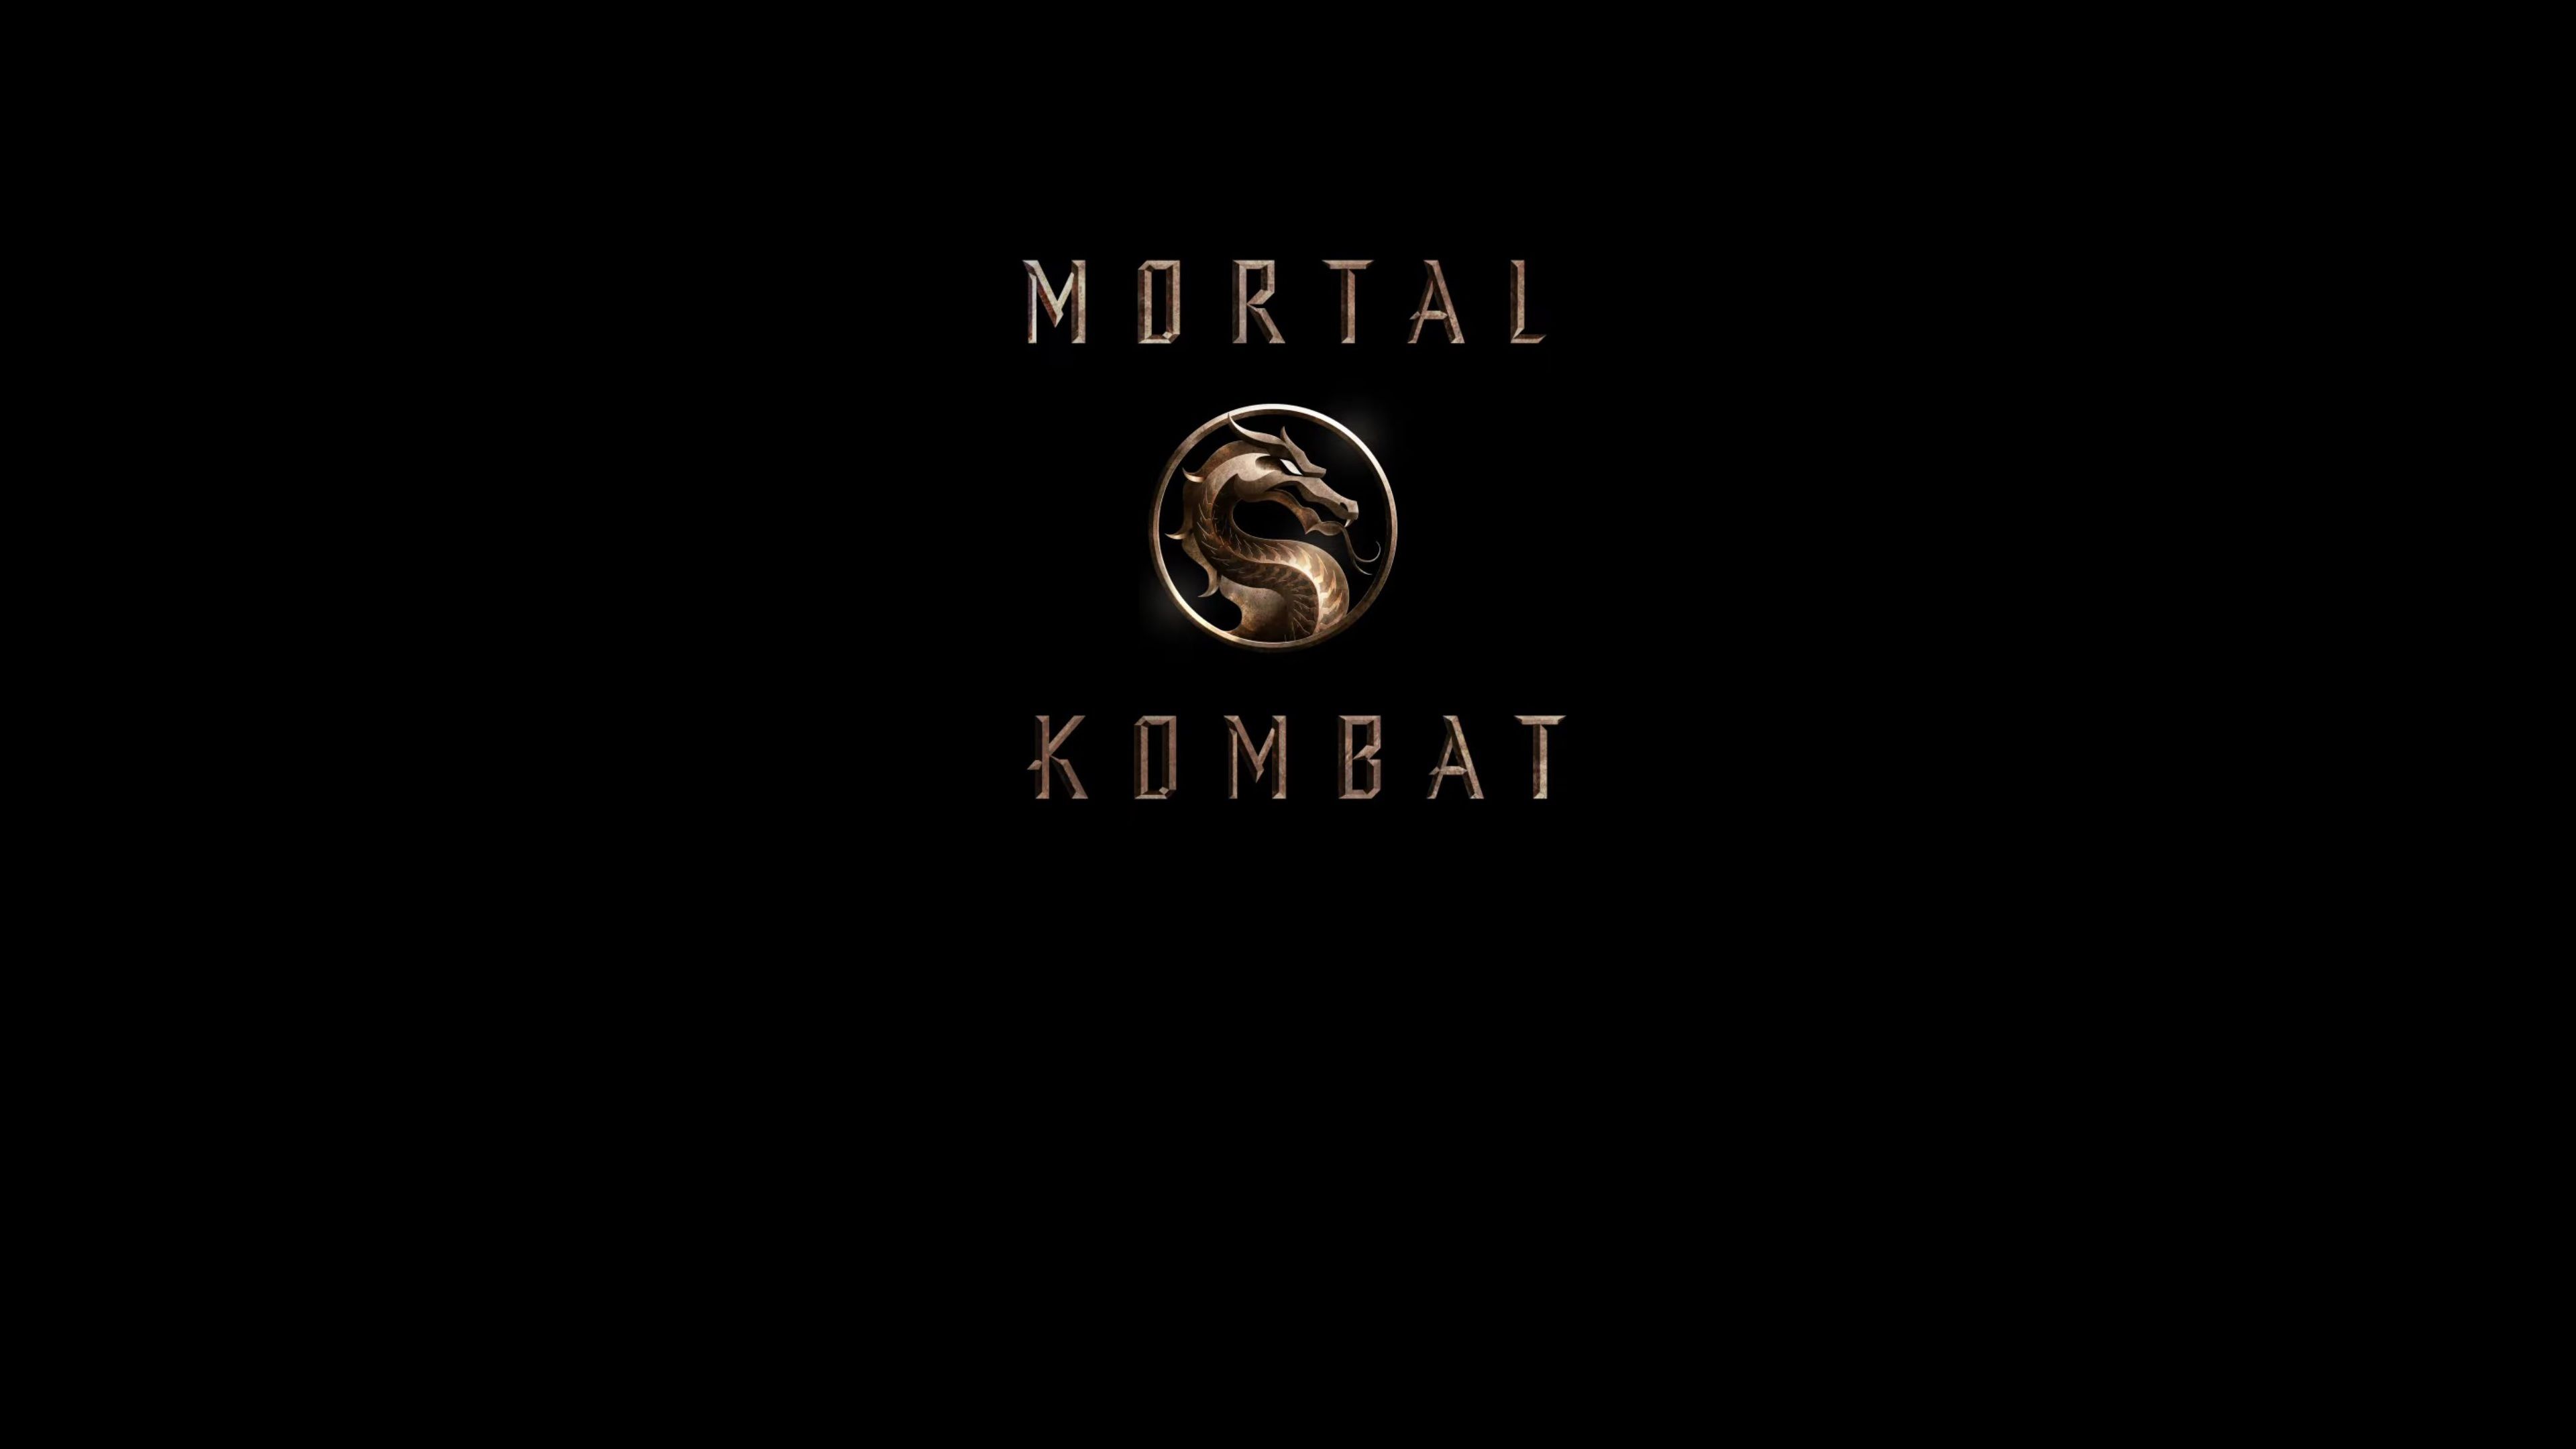 Wallpaper 4k Mortal Kombat 2021 Movie Logo 4k Mortal Kombat 2021 Movie Logo 4k wallpaper